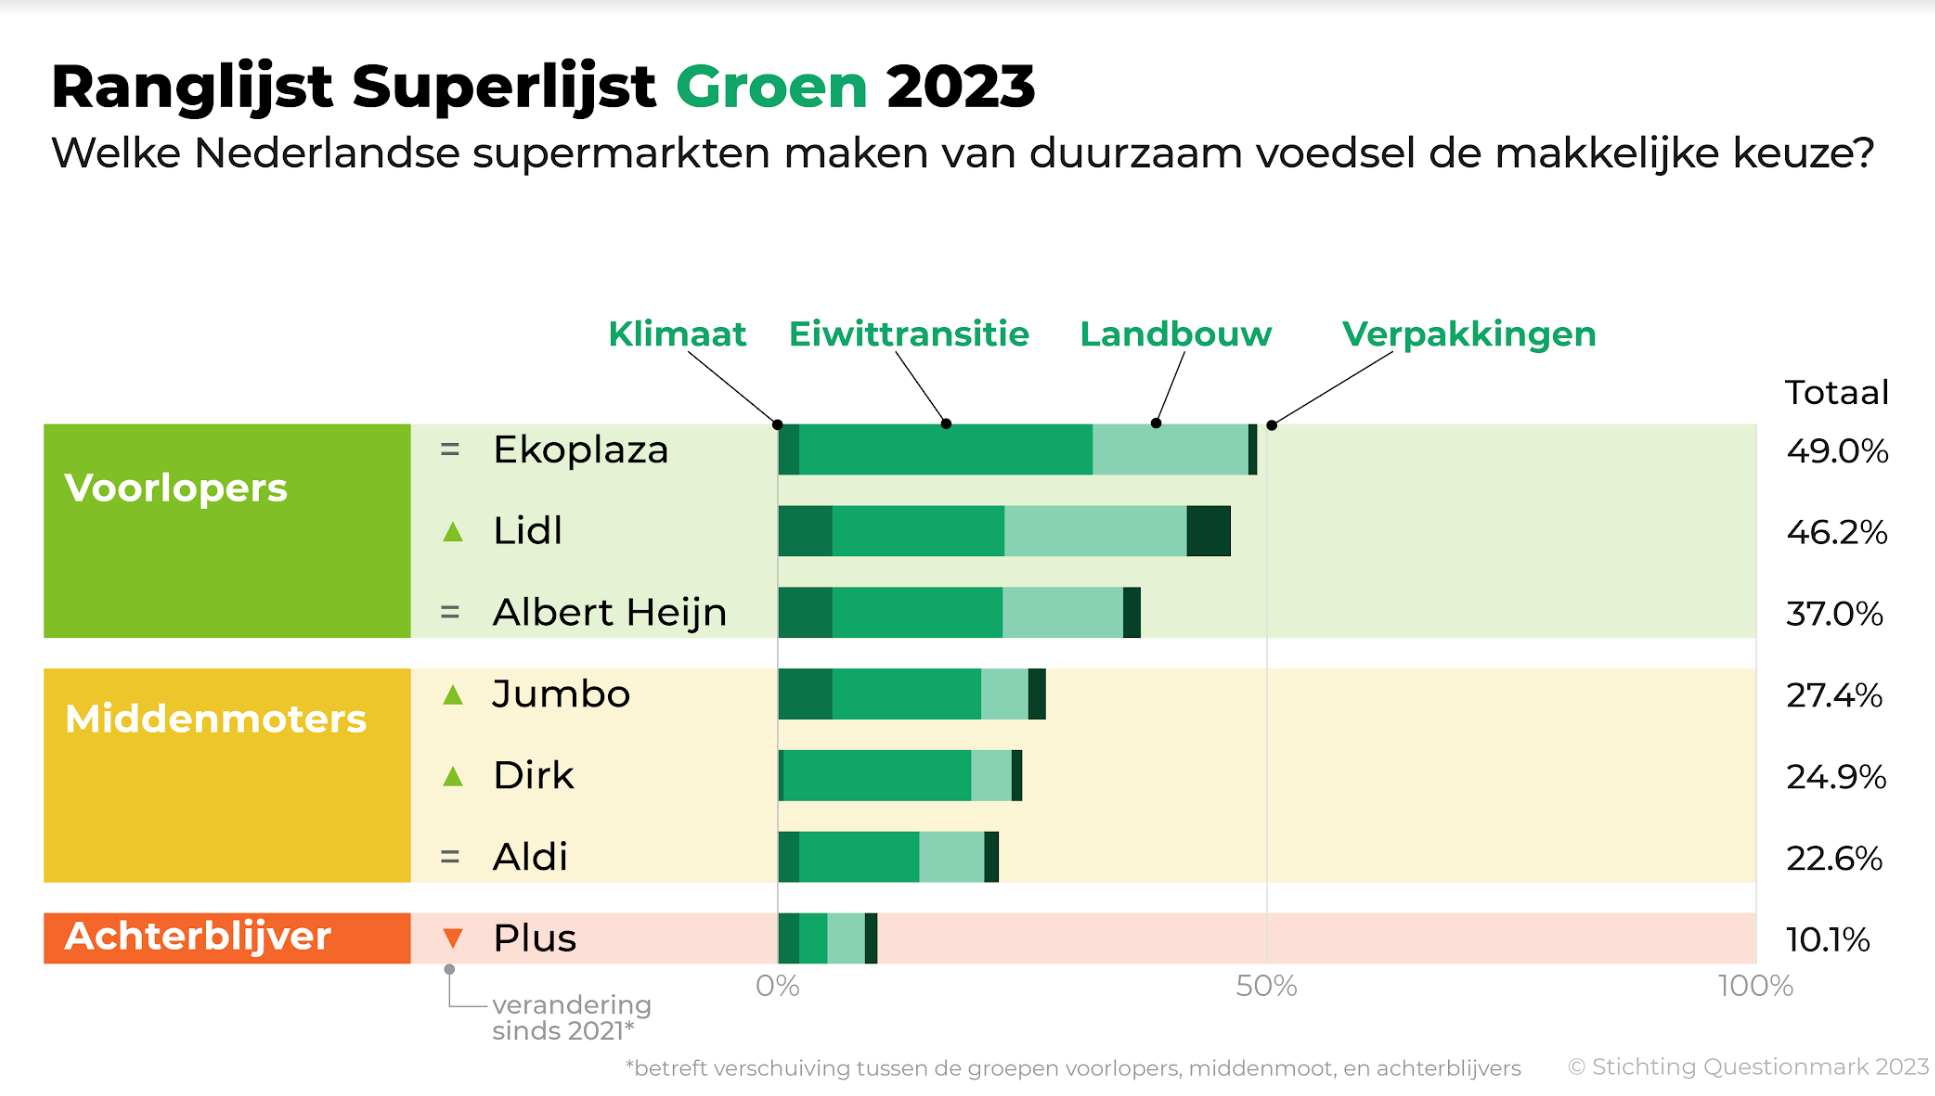 Ranglijst Superlijst Groen 2023 Questionmark